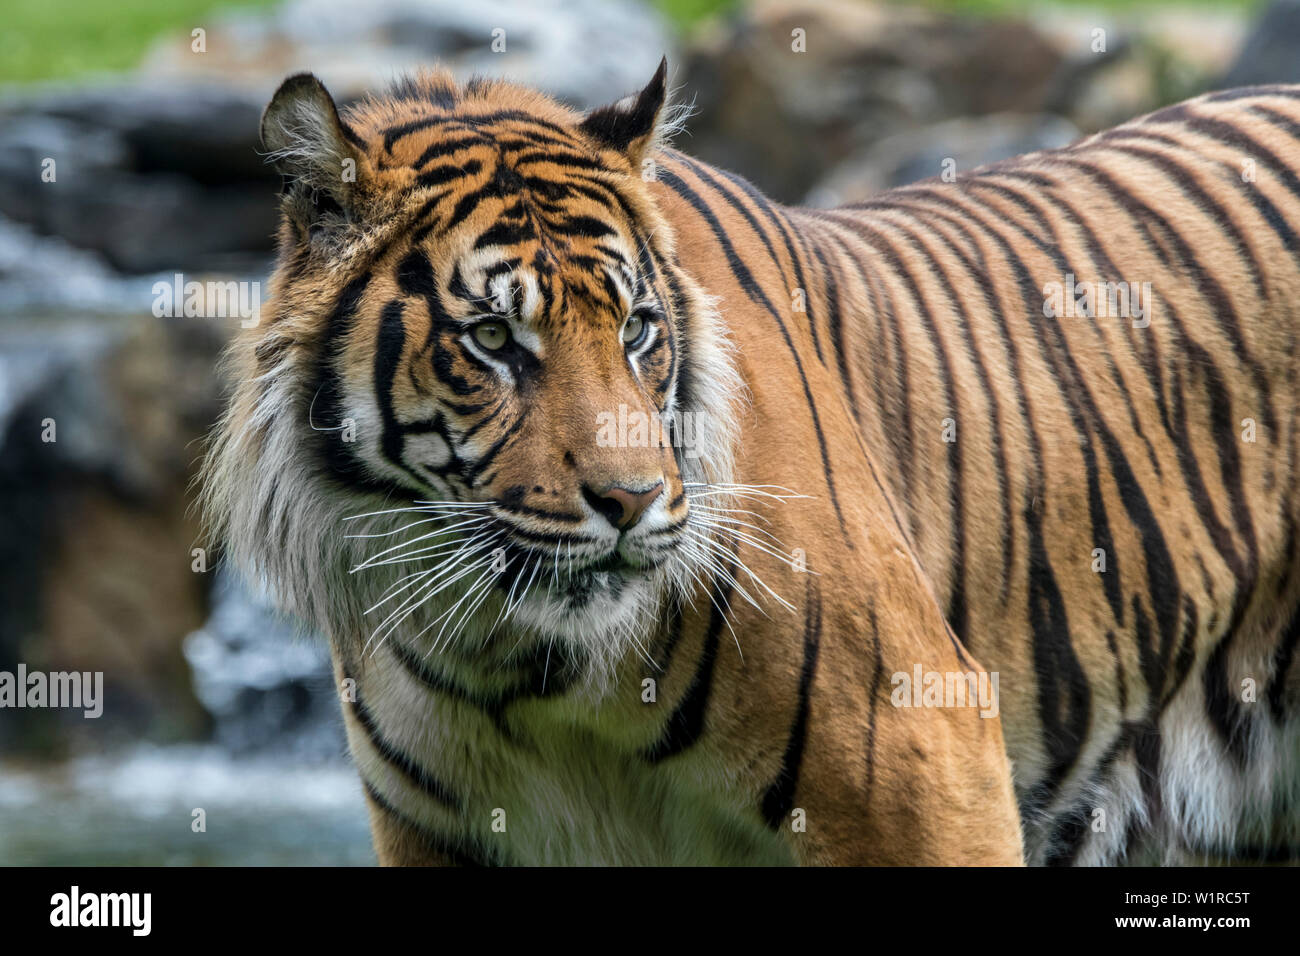 Tigre de Sumatra (Panthera tigris sondaica) debout dans le ruisseau, originaire de l'île indonésienne de Sumatra, Indonésie Banque D'Images